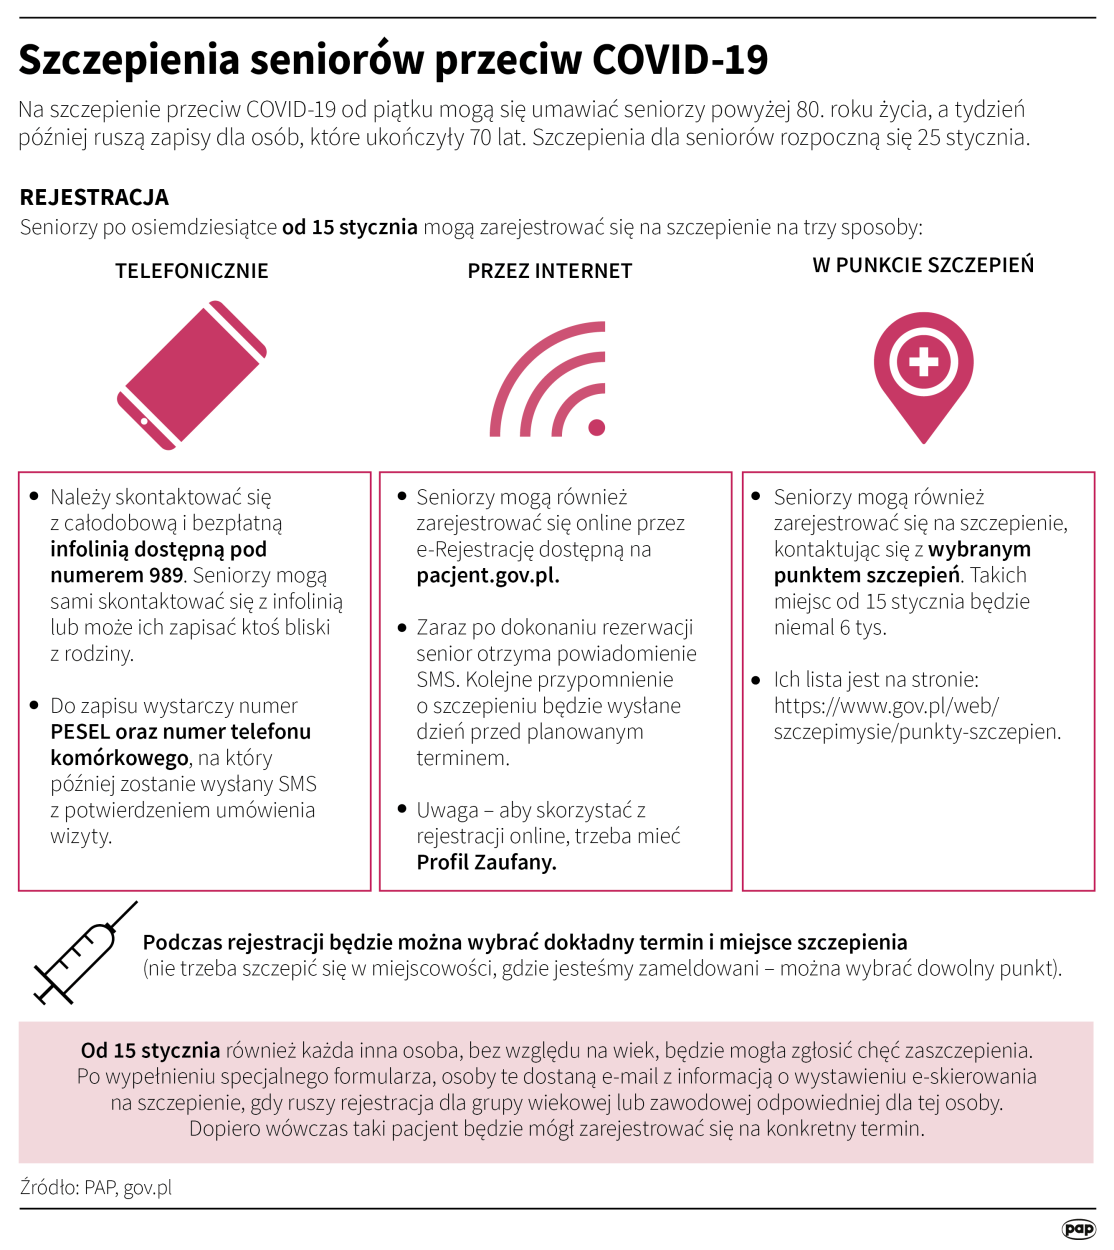 Szczepienia przeciw Covid-19 dla seniorów/Infografika/PAP/Maria Samczuk